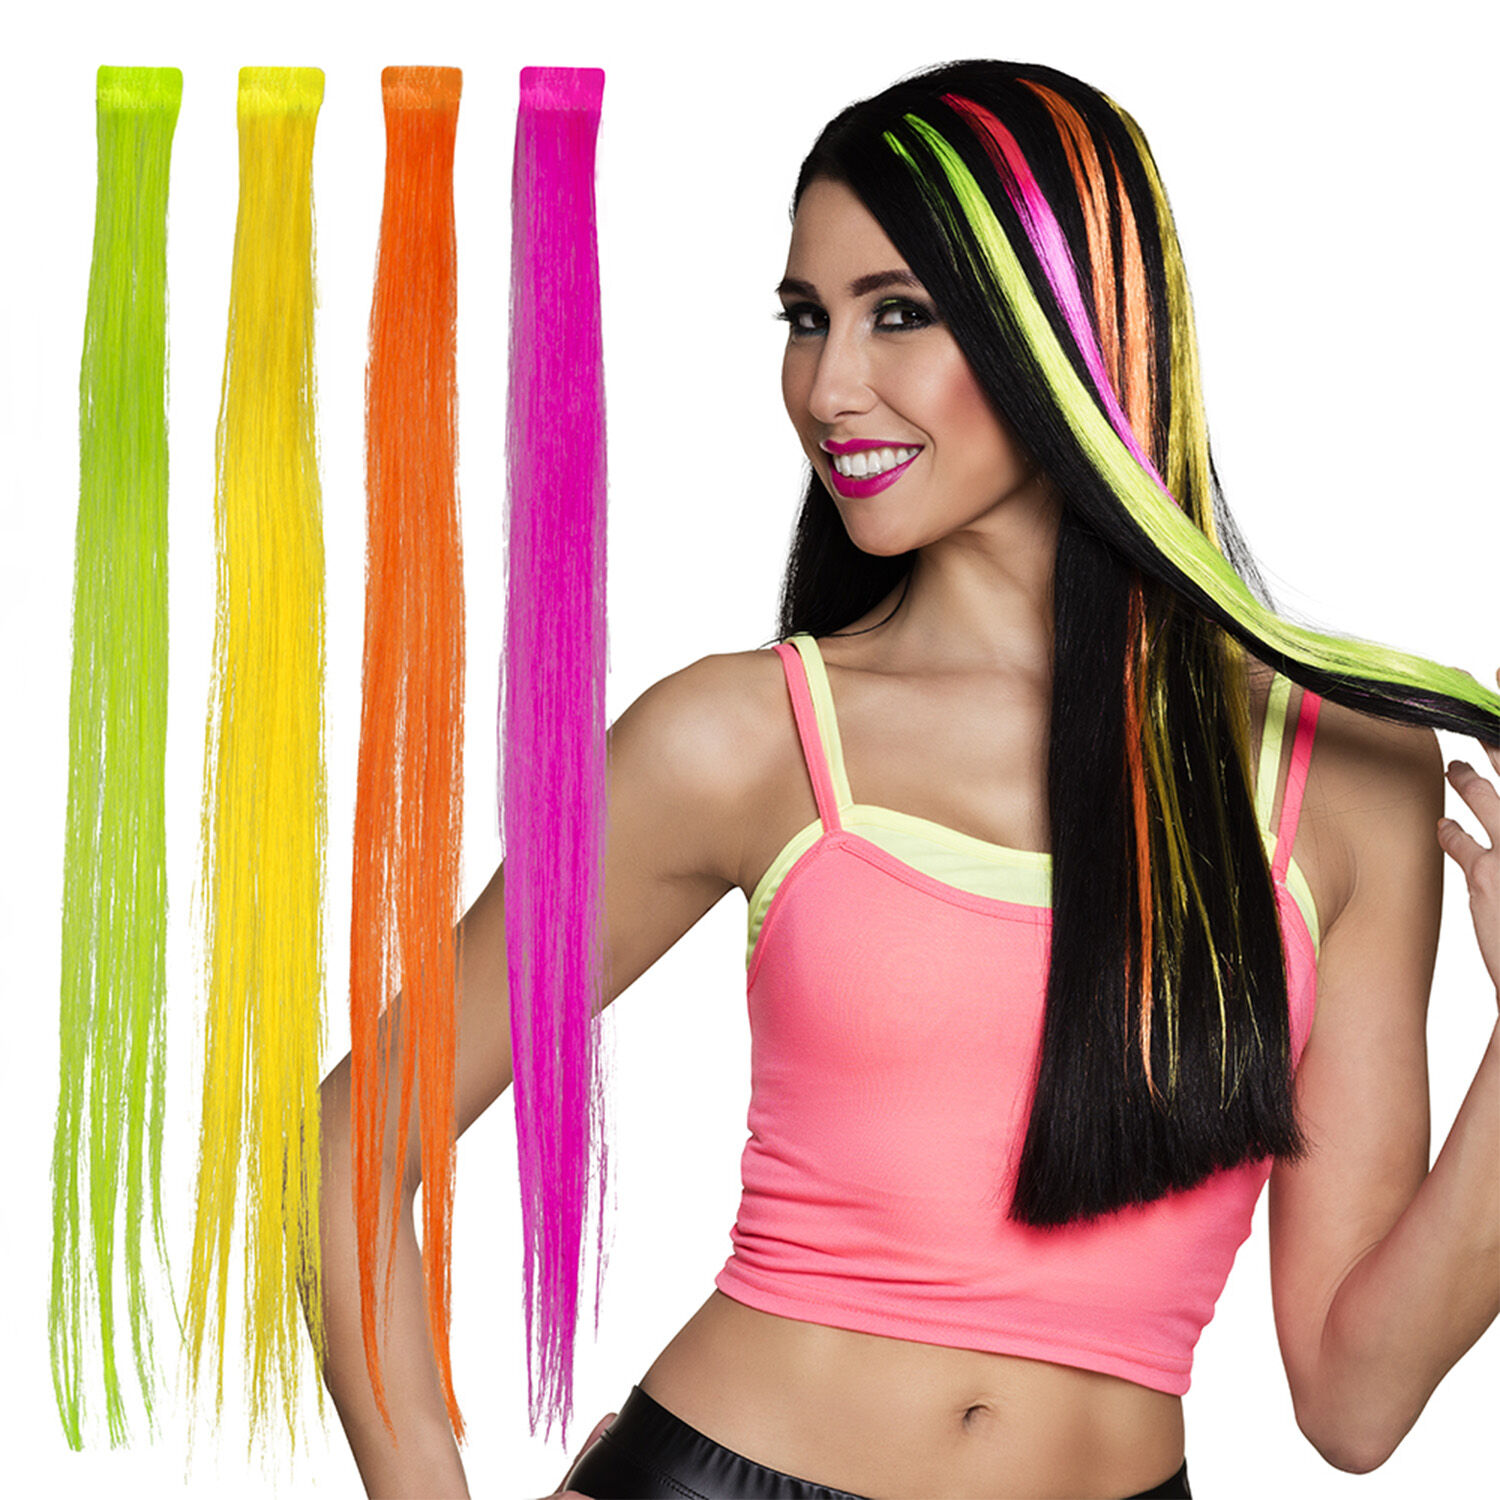 NEU Haarsträhne neonfarben, 1 Stück, 4-farbig sortiert